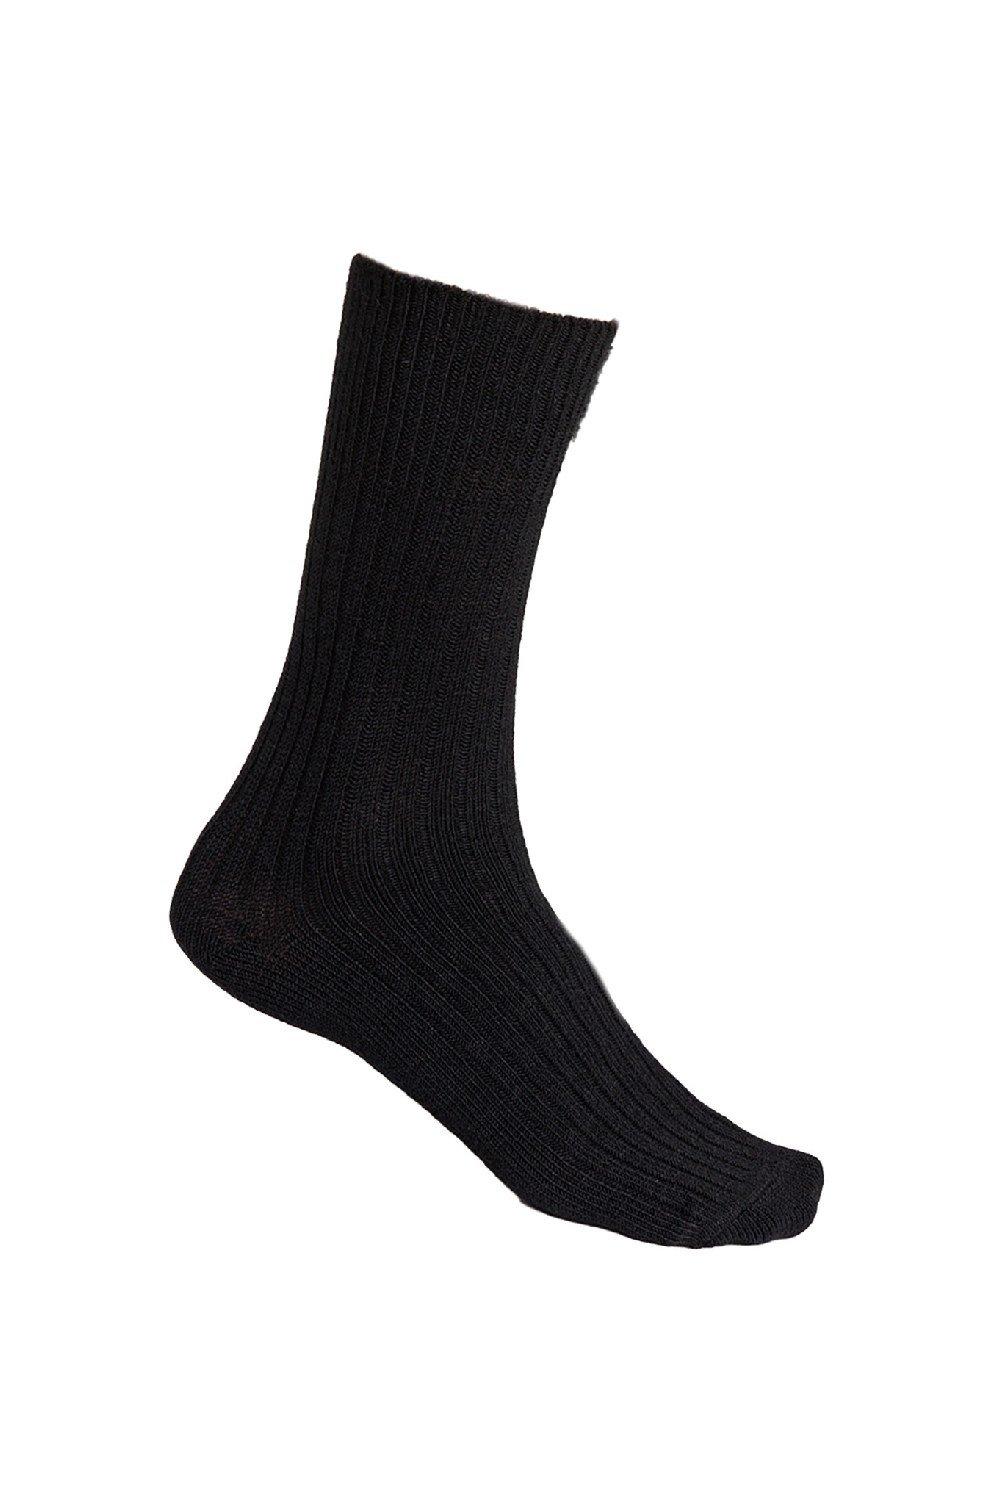 Alpaca Socks for Winter Knitted Crew Boot Socks